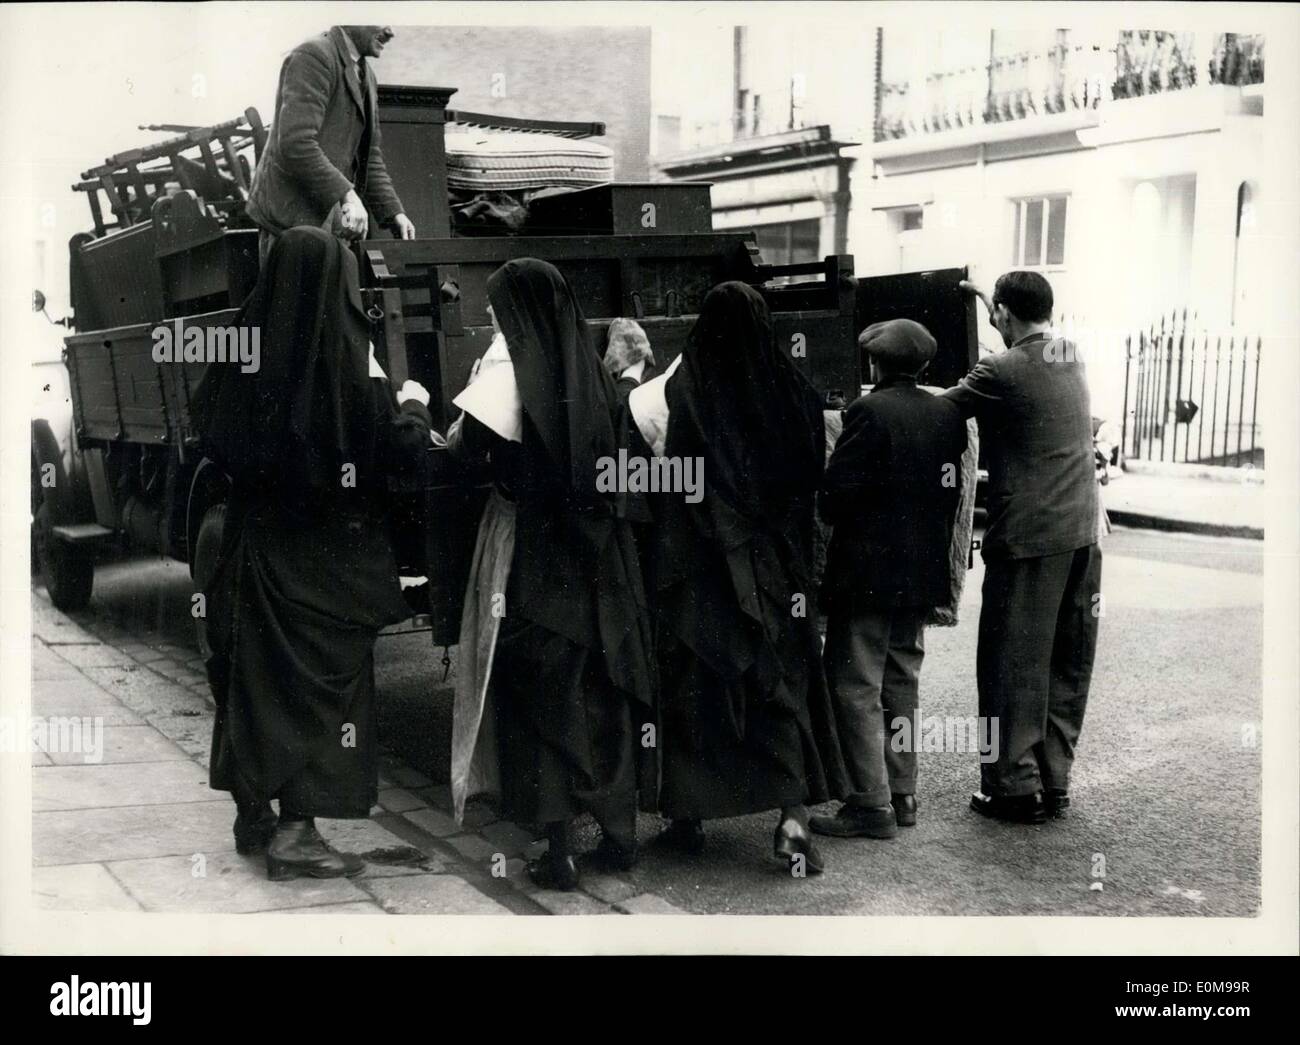 20 février 1954 - Les moniales donner un coup de main pour le Piano : Photo montre trois religieuses donner à l'homme dépose une main avec le piano en dehors de Saint-Joseph d'R.C. L'école primaire, Cadogan - street, S.W., ce matin. Banque D'Images